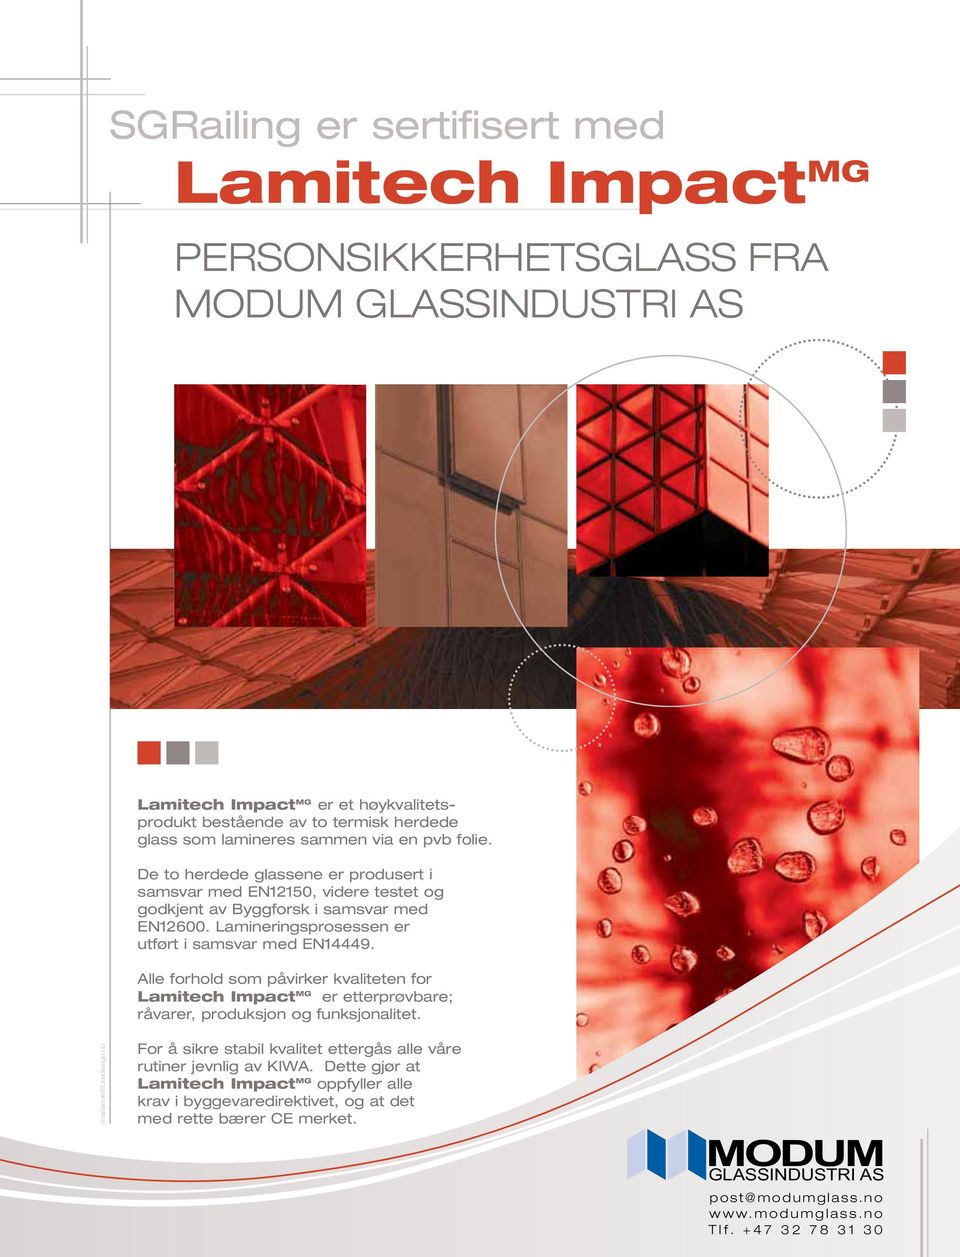 Alle forhold som påvirker kvaliteten for Lamitech Impact MG er etterprøvbare; råvarer, produksjon og funksjonalitet. marianne@furedesign.